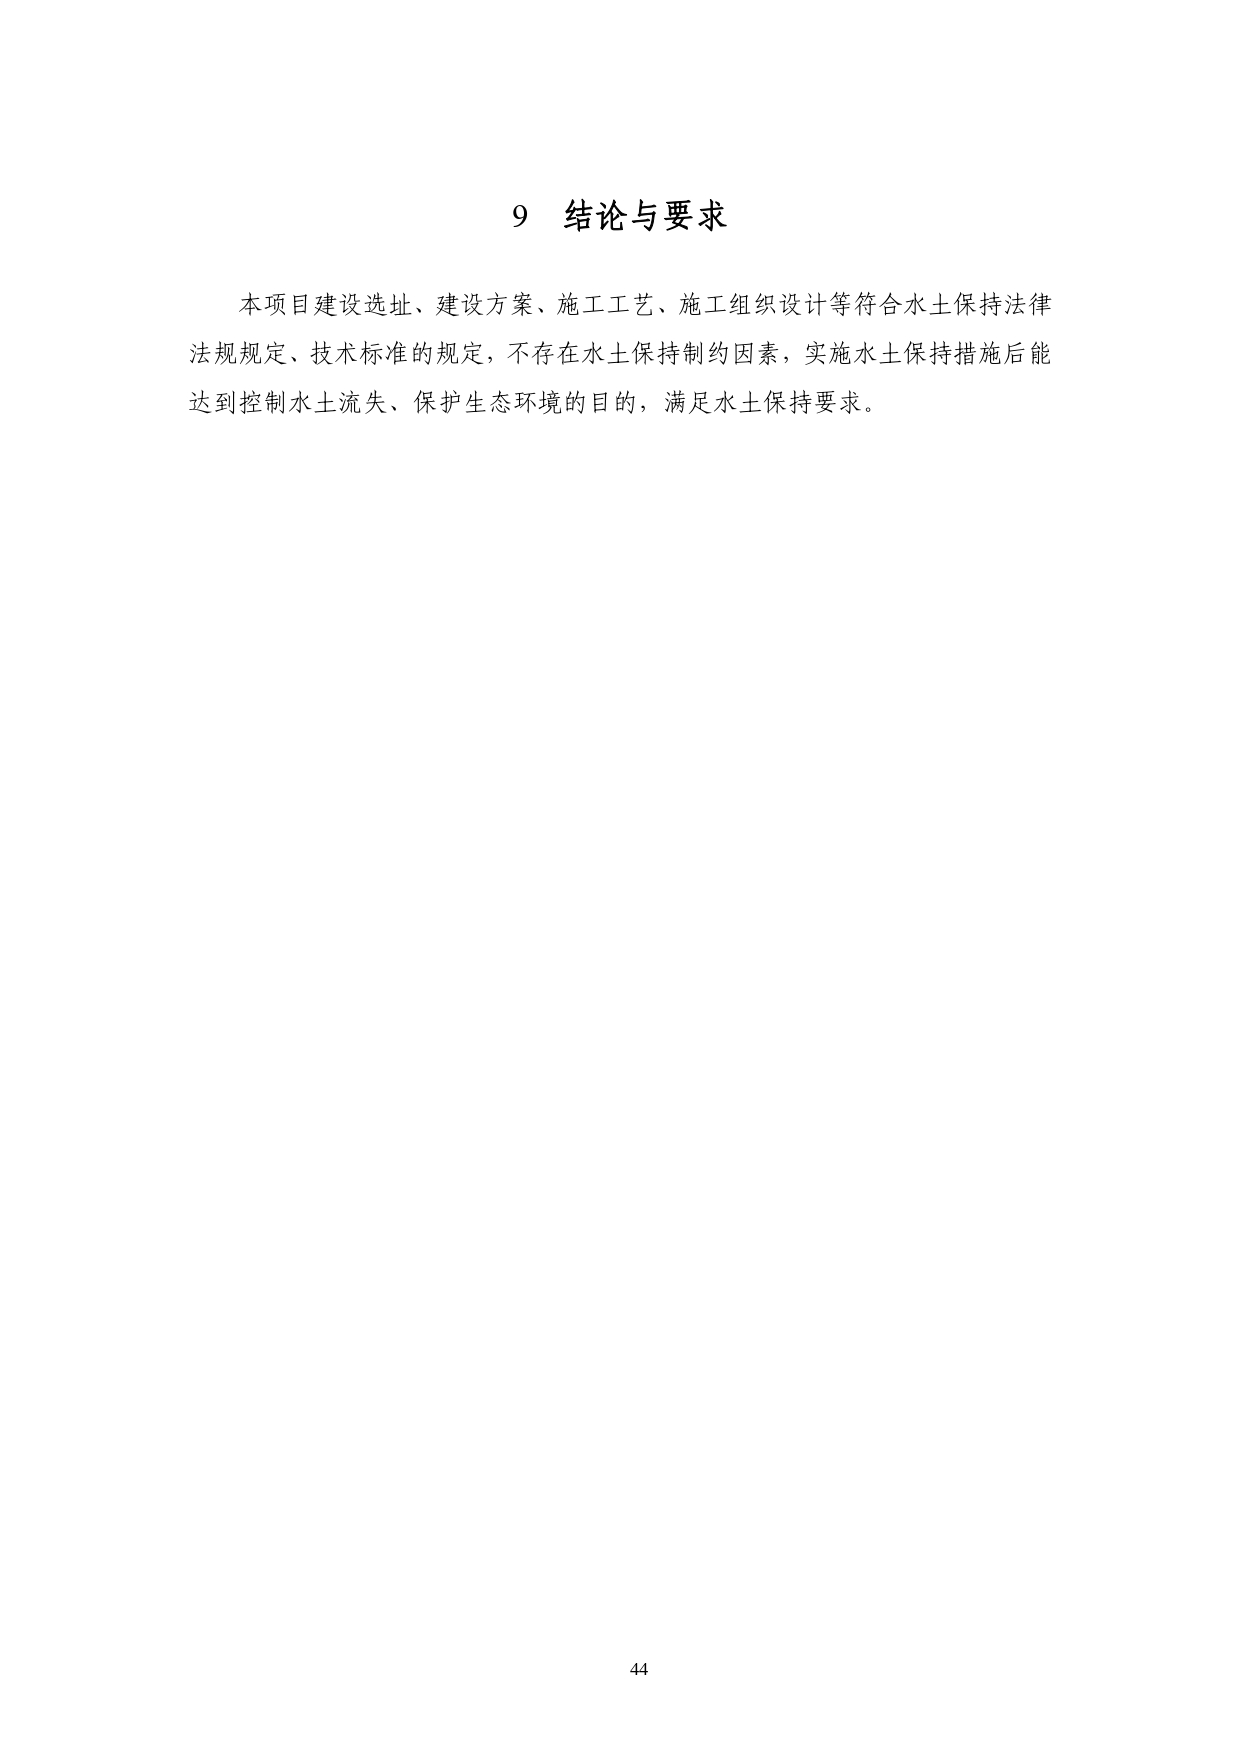 01-中果广场大厦项目水土保持报告表-打印_page-0055.jpg